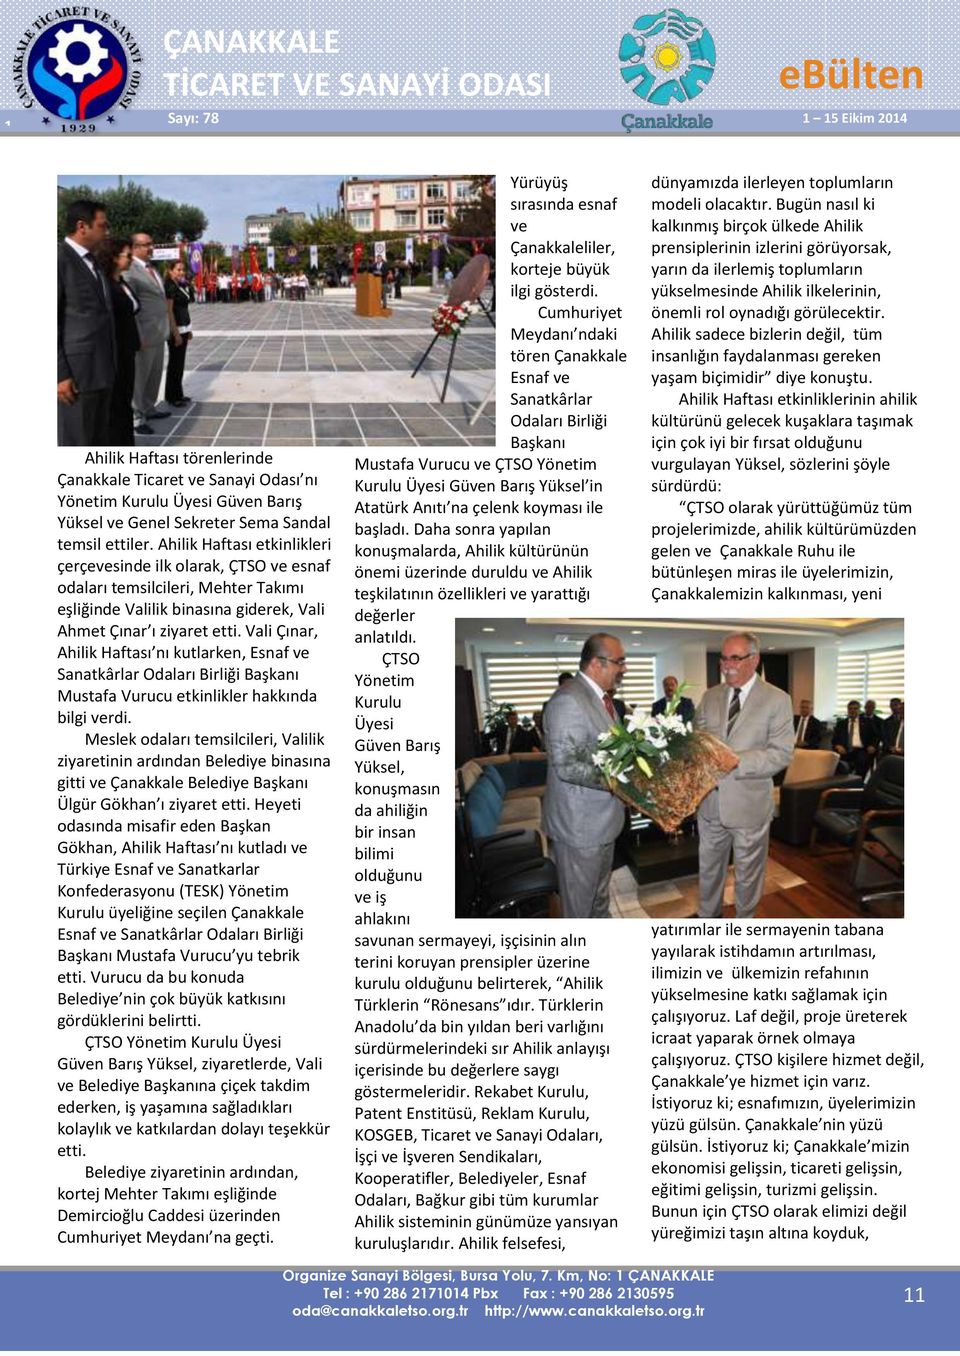 Vali Çınar, Ahilik Haftası nı kutlarken, Esnaf ve Sanatkârlar Odaları Birliği Başkanı Mustafa Vurucu etkinlikler hakkında bilgi verdi.